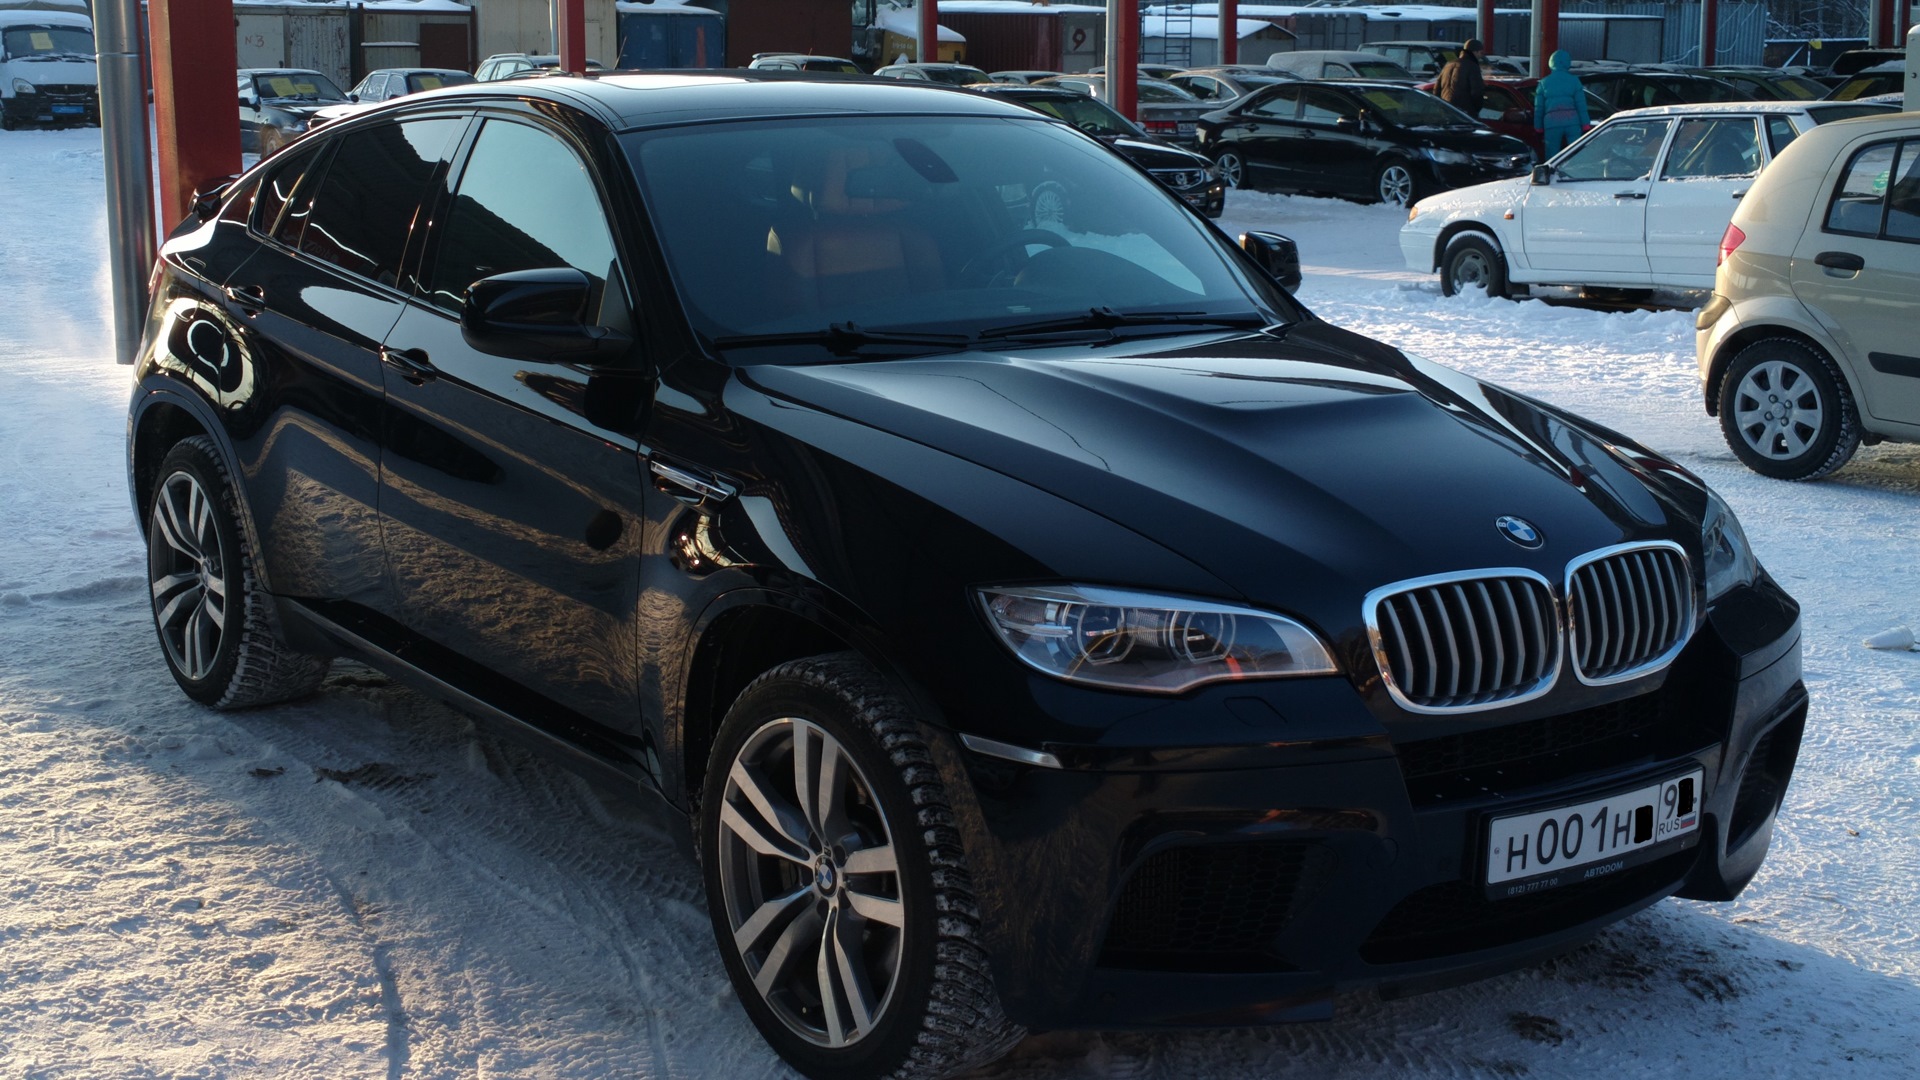 X6 2013. Черный BMW x6 2012. БМВ х6 2010. Черный BMW x6 2013. БМВ х6 2013 черный.